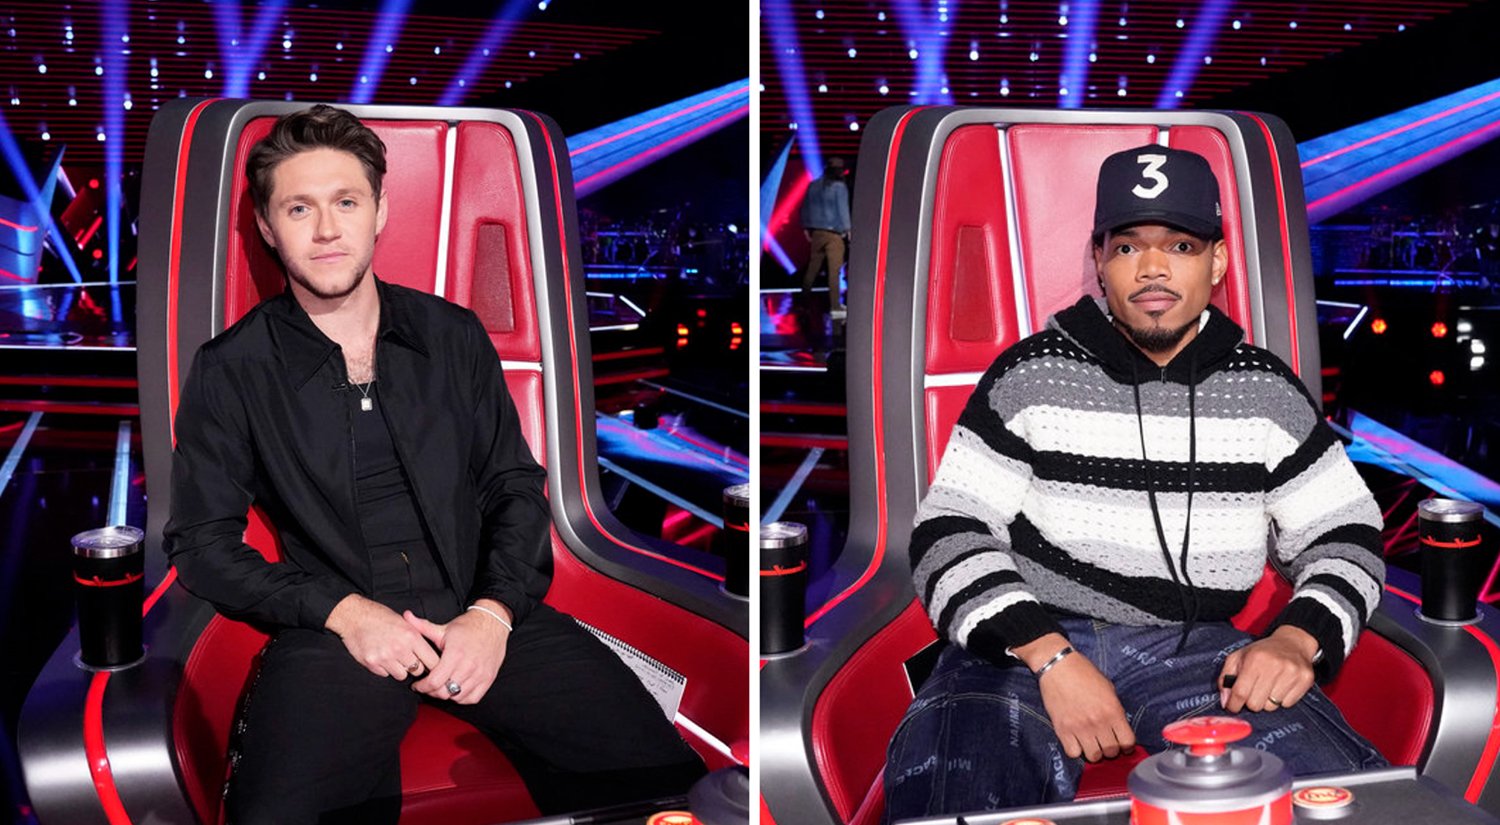 左图:Niall Horan坐在《美国好声音》第23季的椅子上;右图:Chance The Rapper坐在《美国好声音》第23季的椅子上